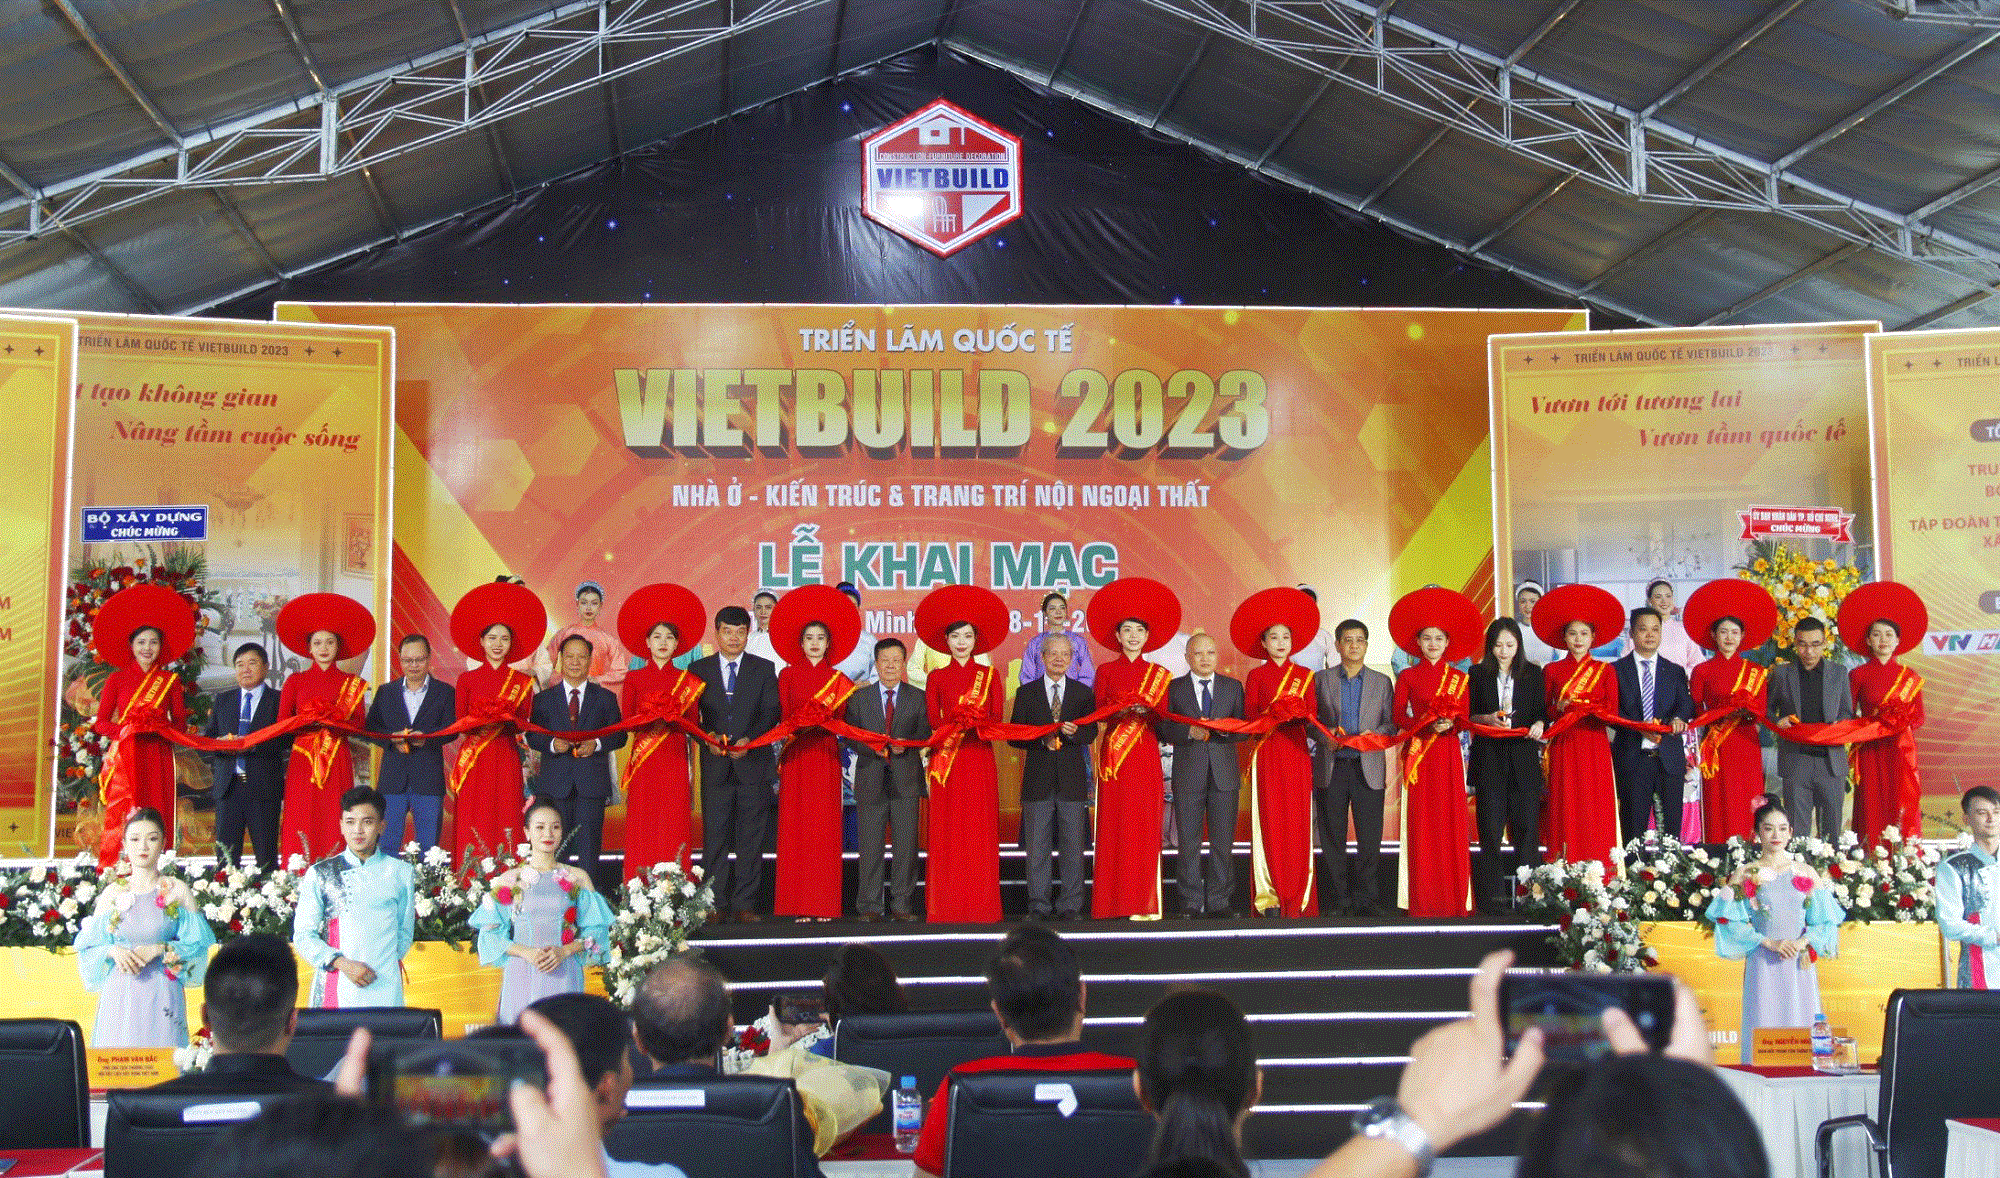 Khai mạc triễn lãm quốc tế Vietbuid 2023 - Ảnh 1.